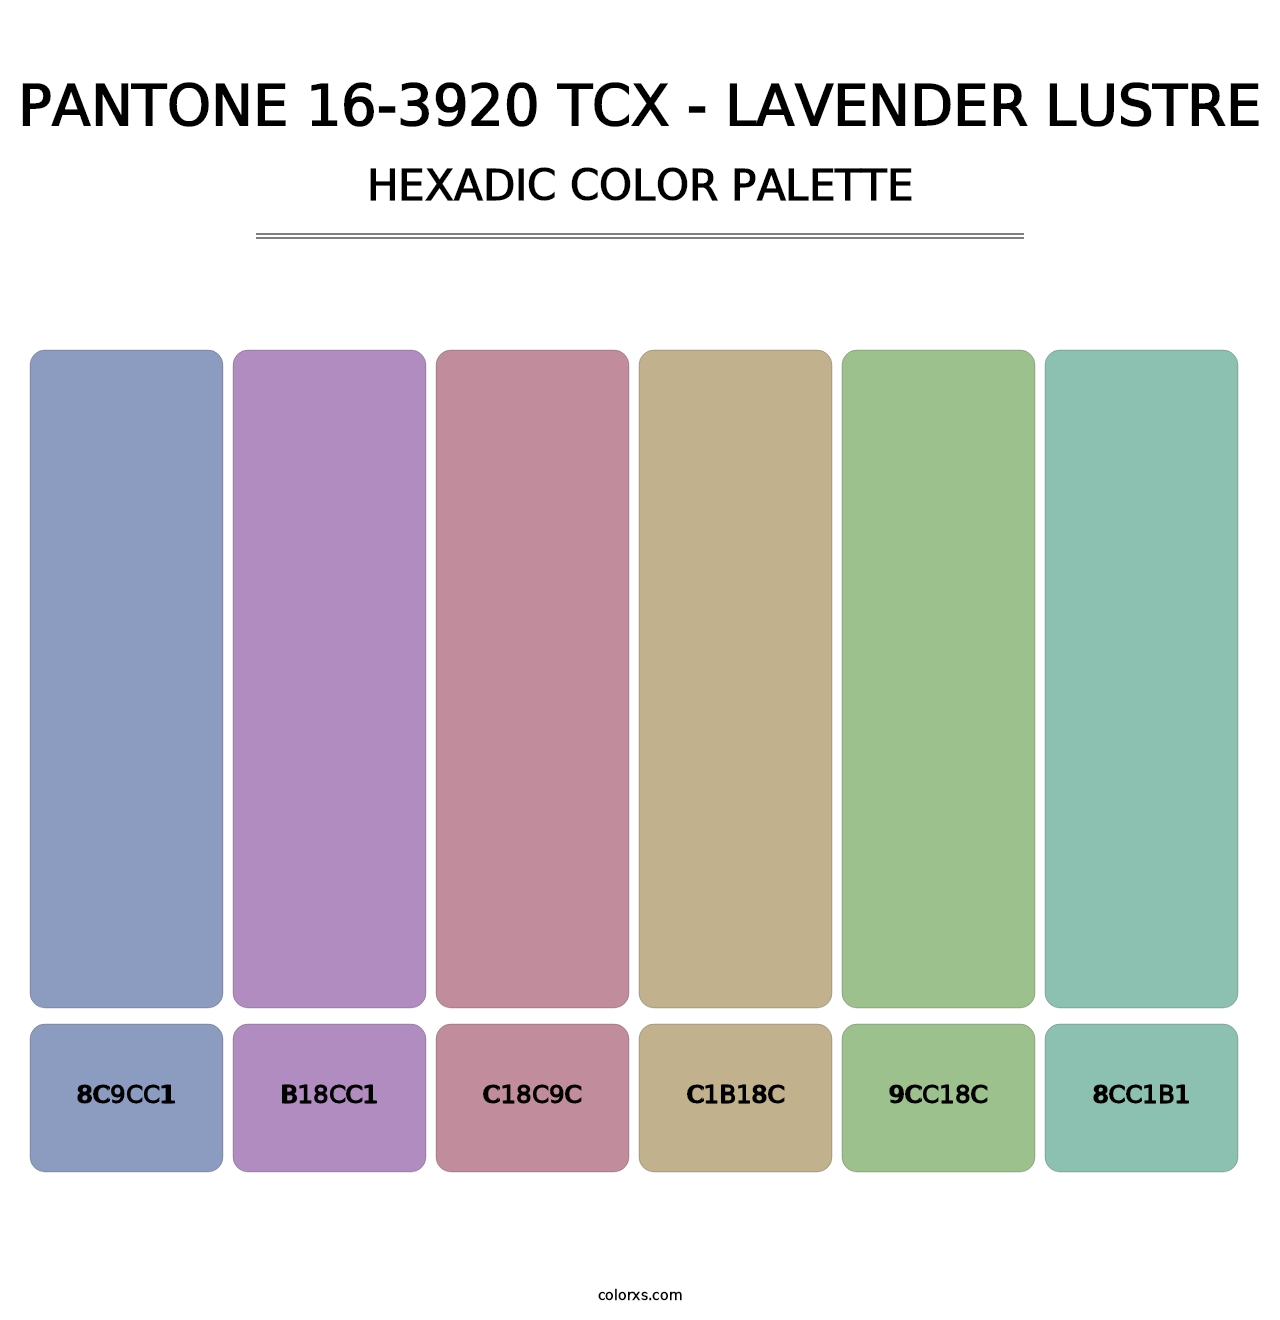 PANTONE 16-3920 TCX - Lavender Lustre - Hexadic Color Palette